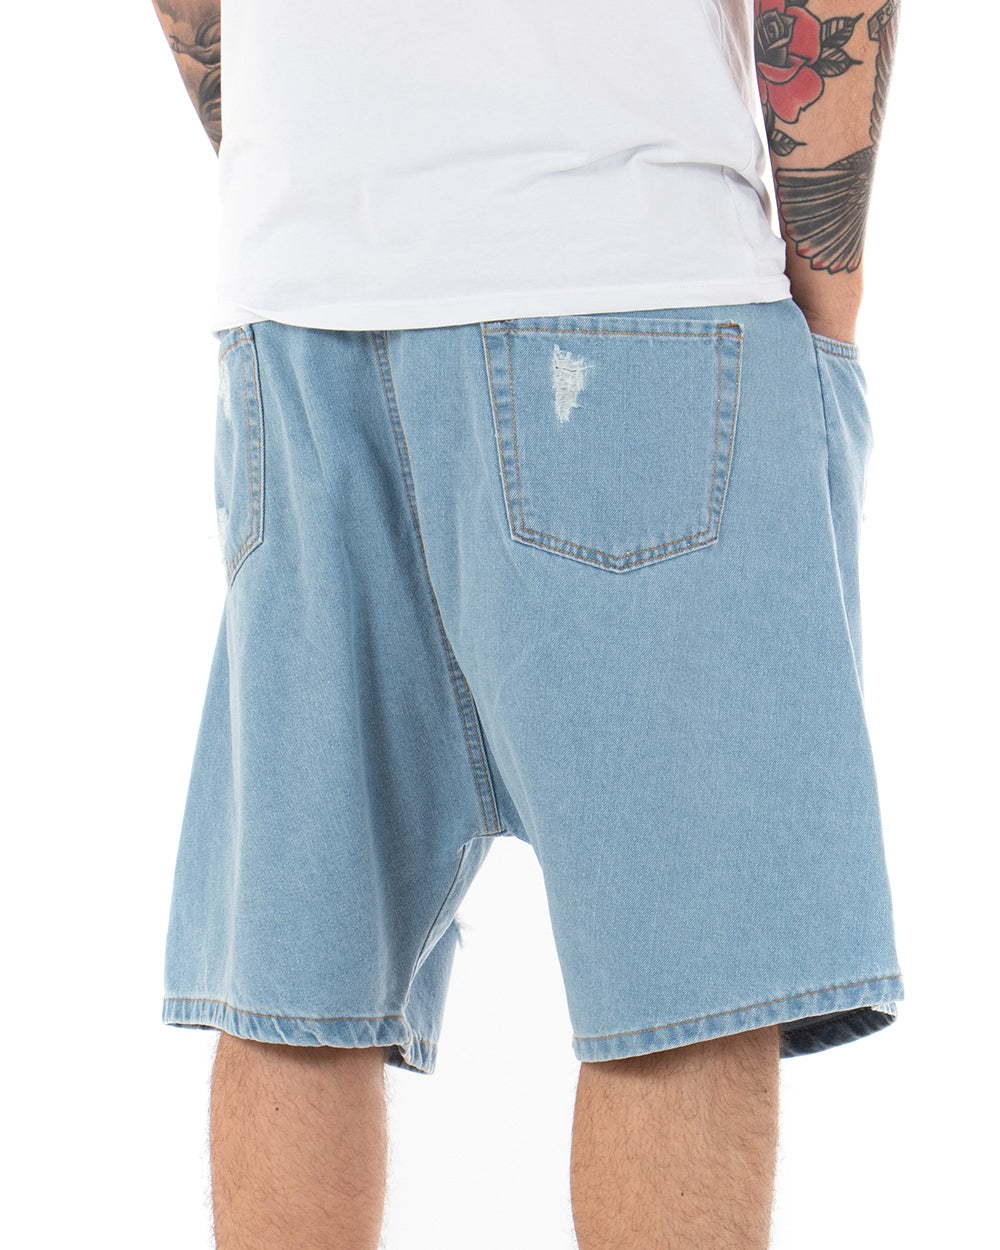 Bermuda Pantaloncino Uomo Denim Chiaro Rotture Jeans Over GIOSAL-PC1779A